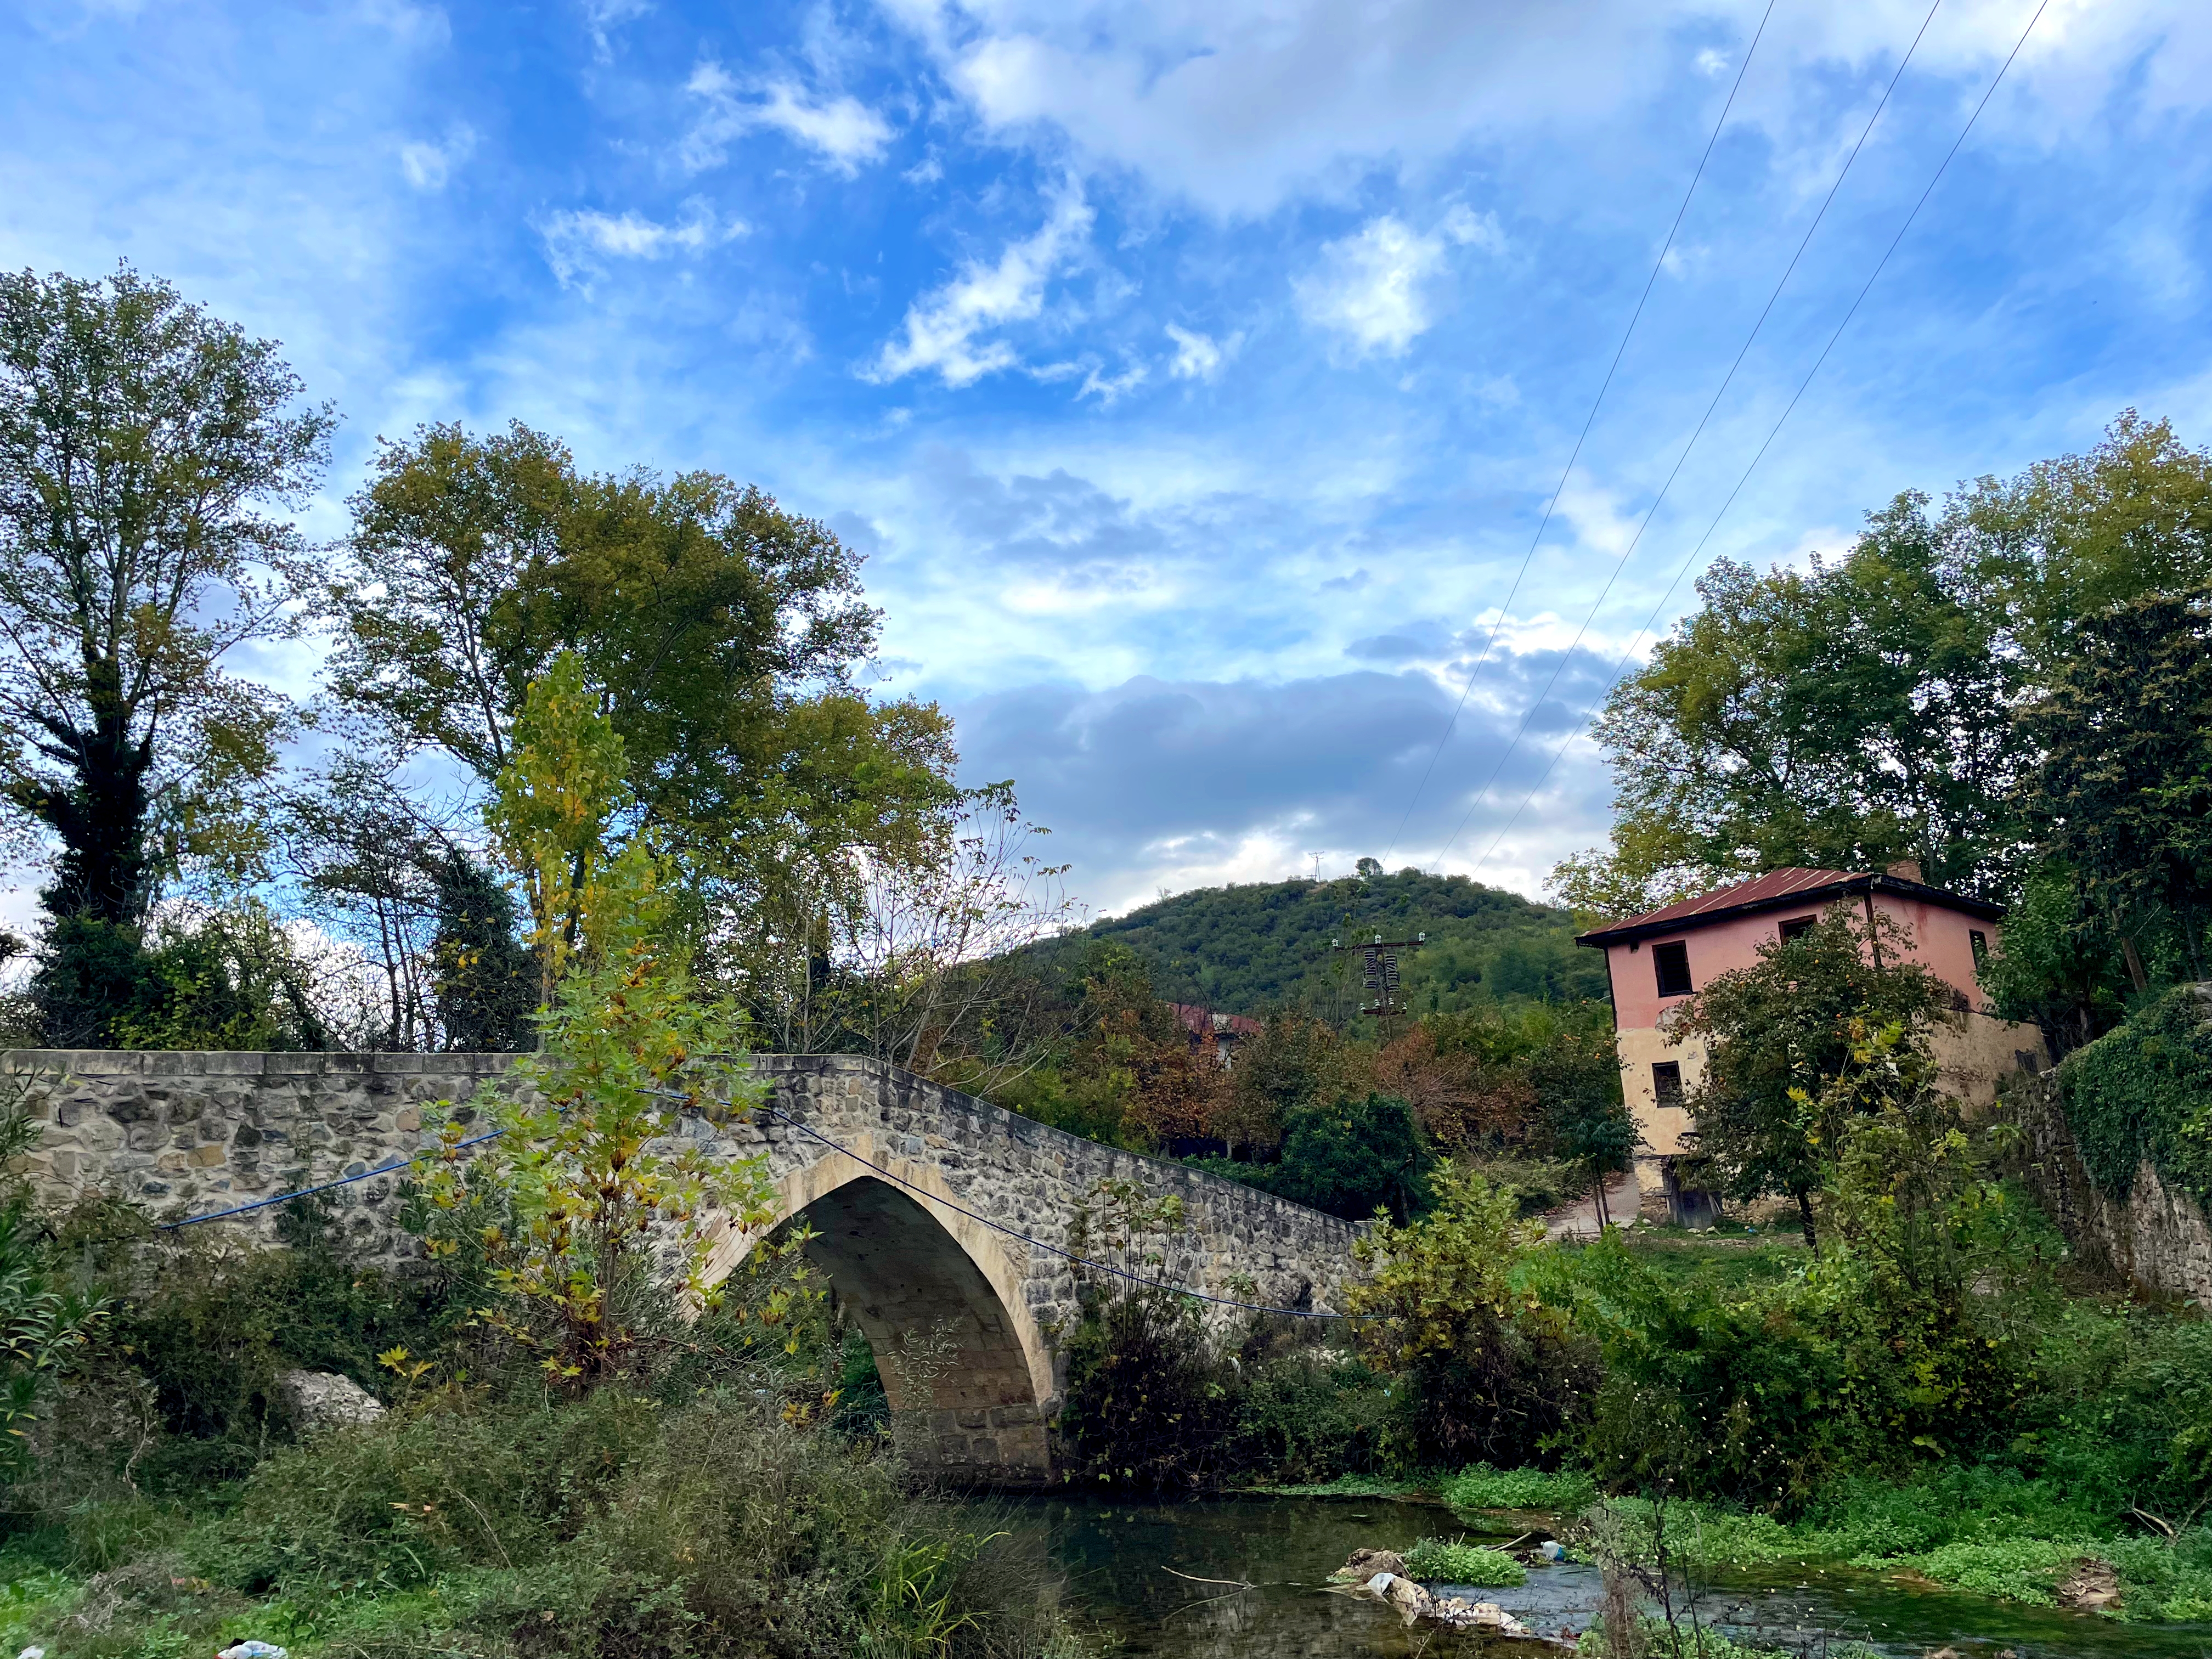 Tarihi Gafarlı Taş Köprü sonbahar renklerine büründü